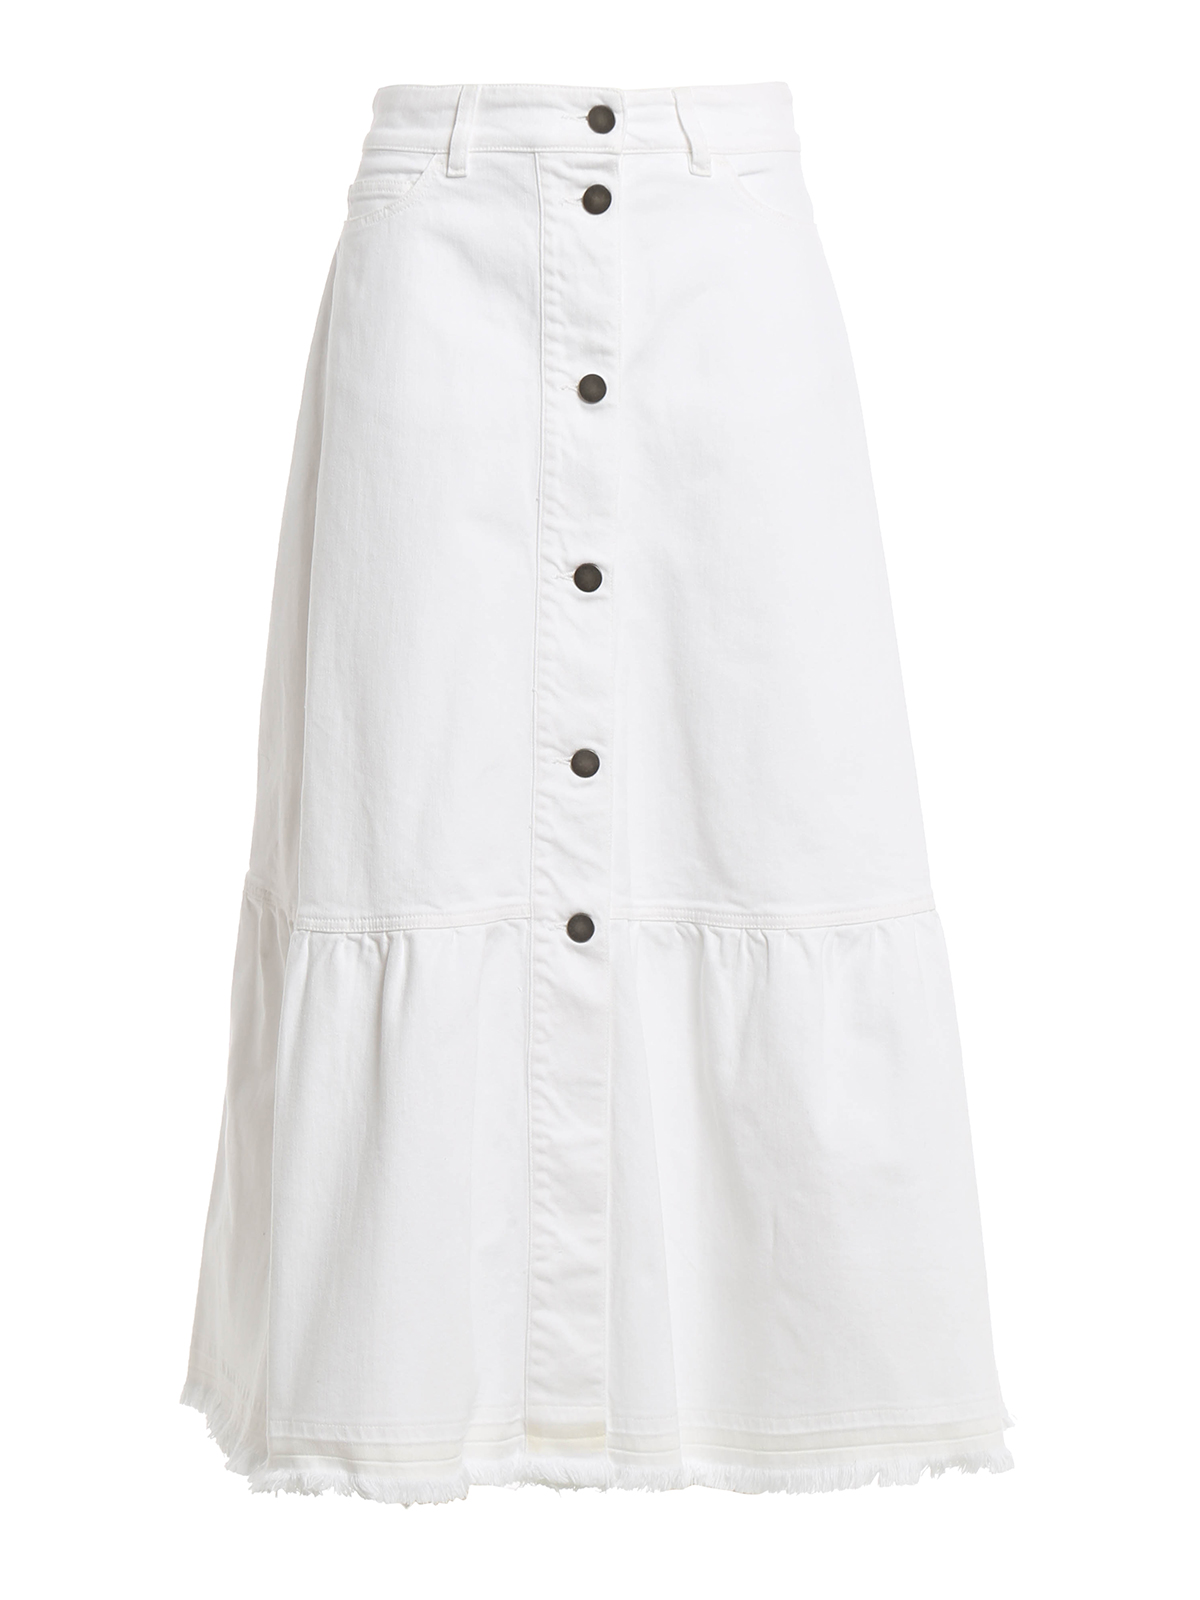 Falda denim larga blanca